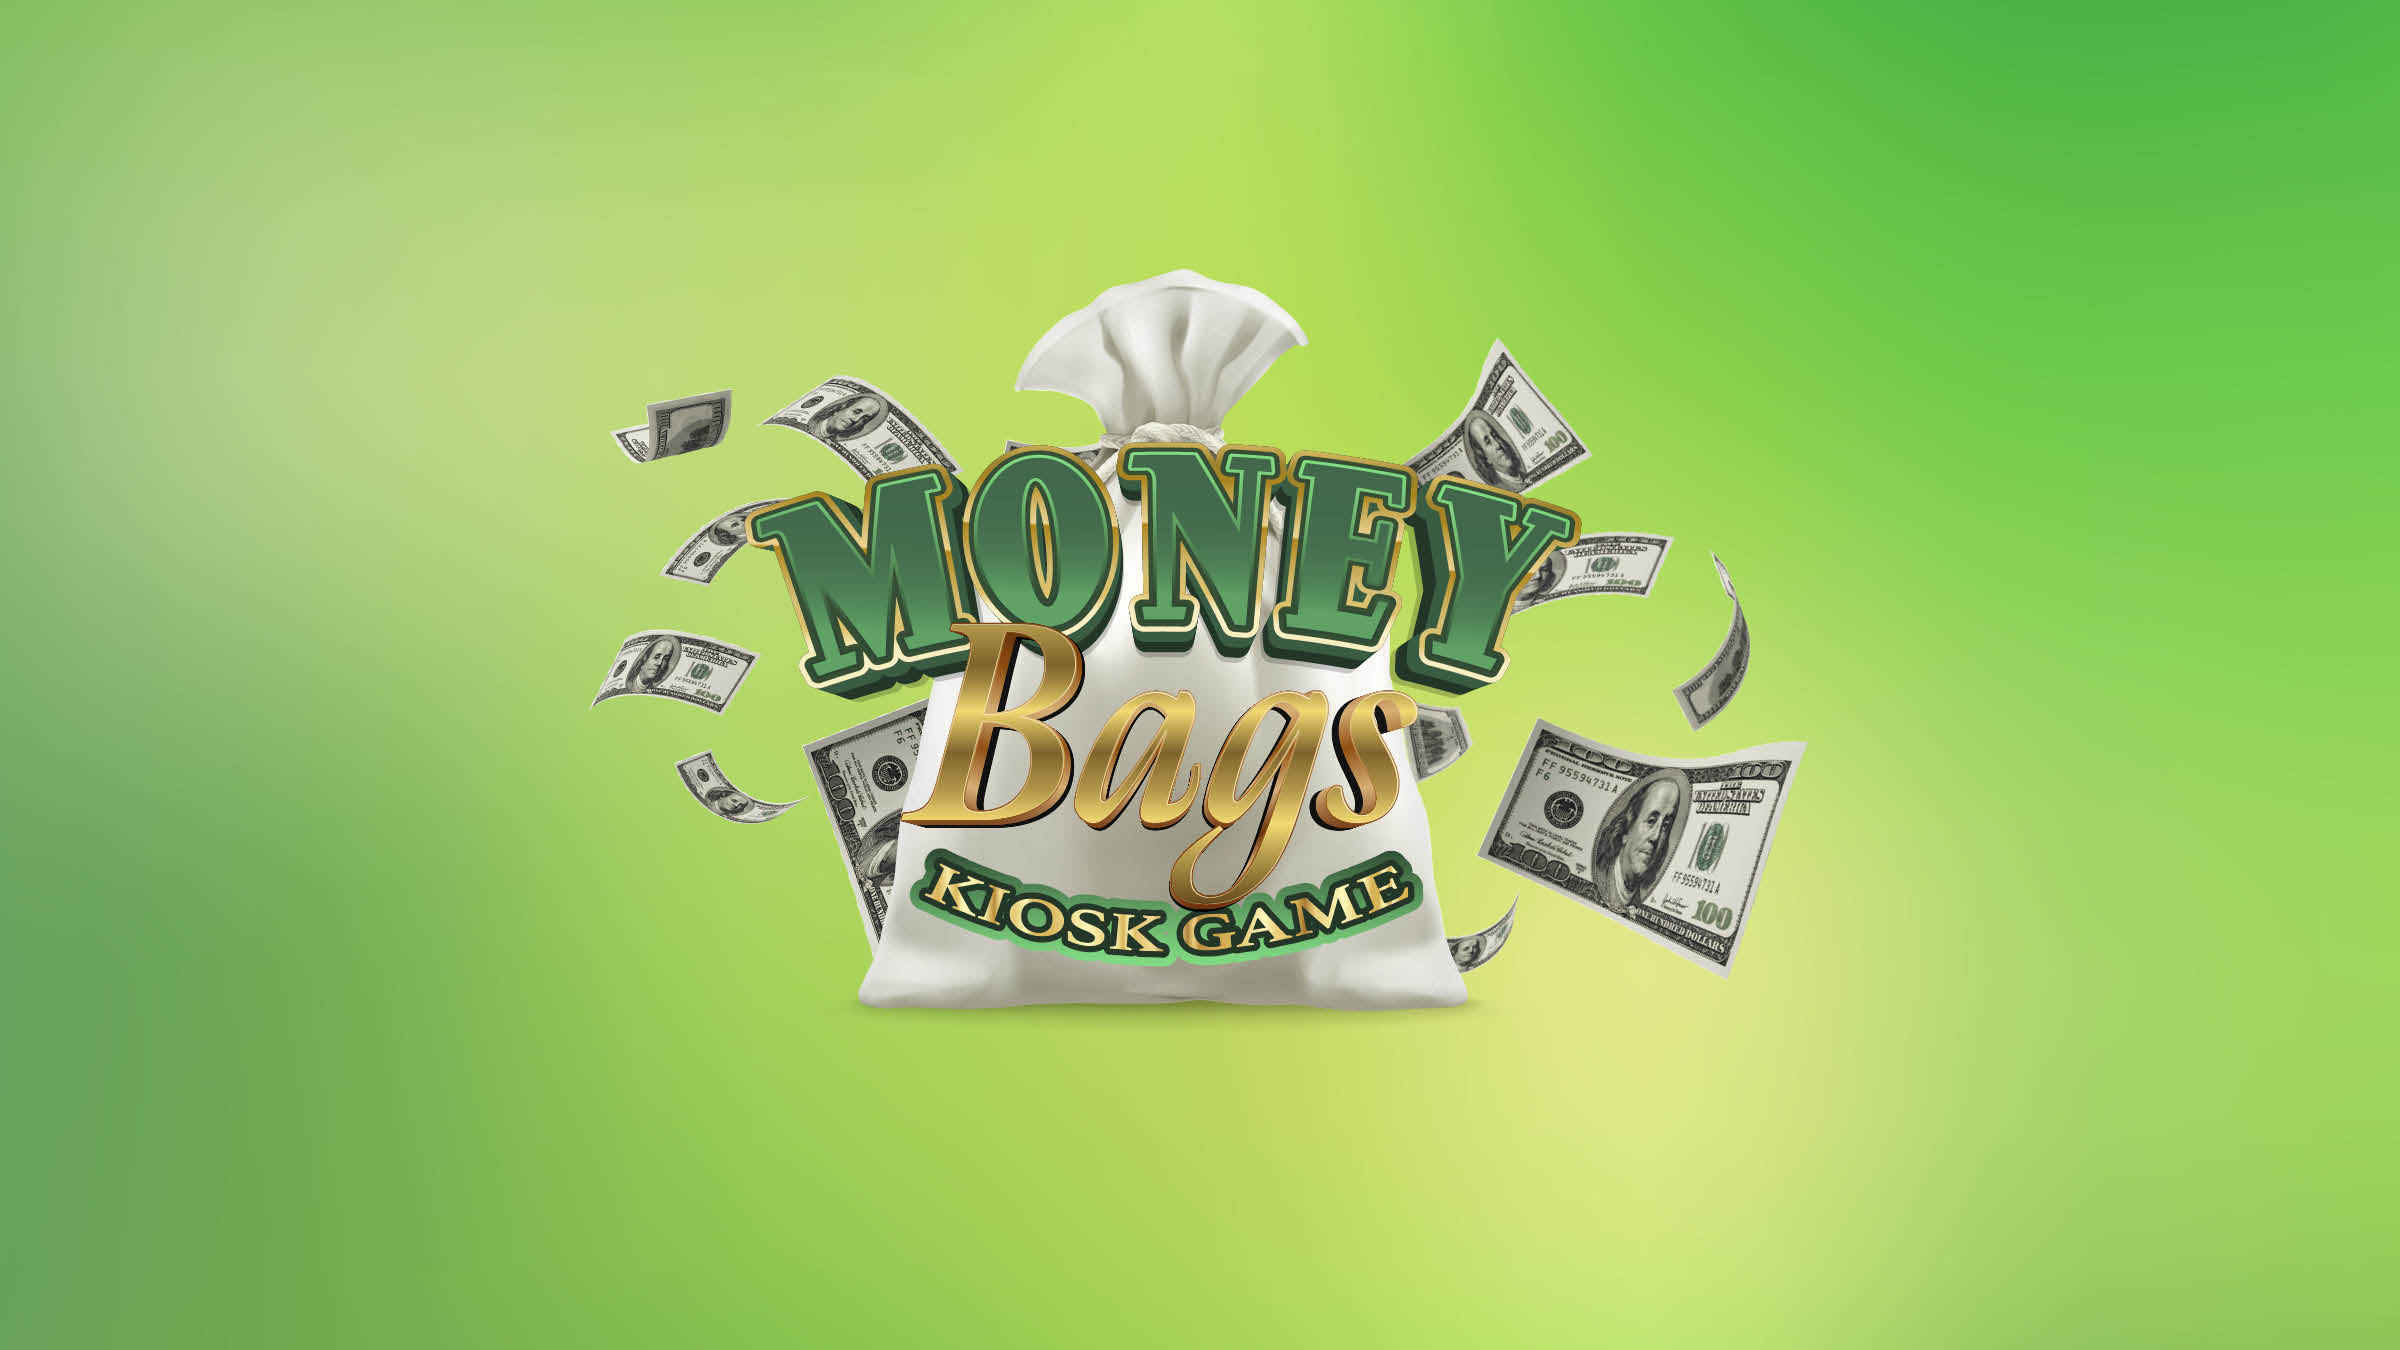 MONEY BAGS KIOSK GAME